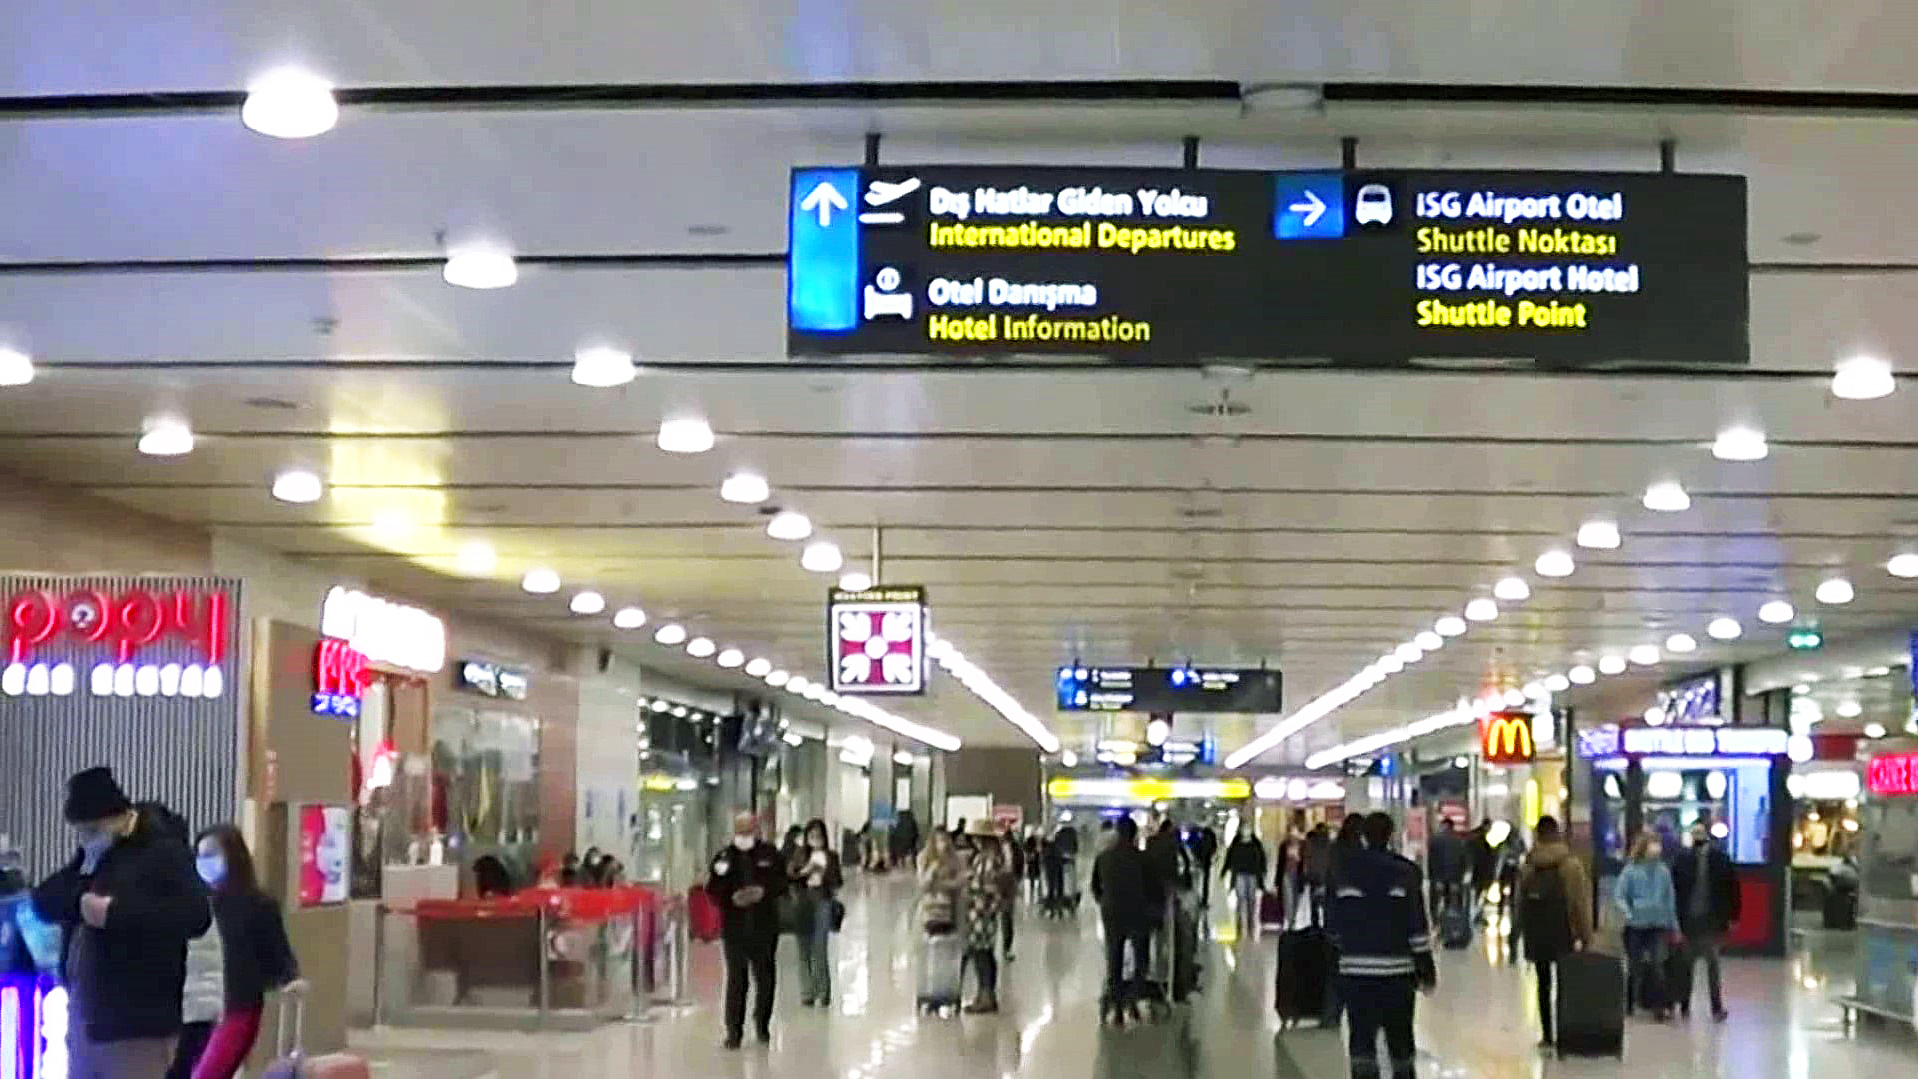 Пересадка в стамбуле можно. Транзитная зона в аэропорту Стамбула. Аэропорт Стамбула пересадка. Аэропорт Стамбула контроль Транзит. Аэропорт Стамбула пересадка на Международный.